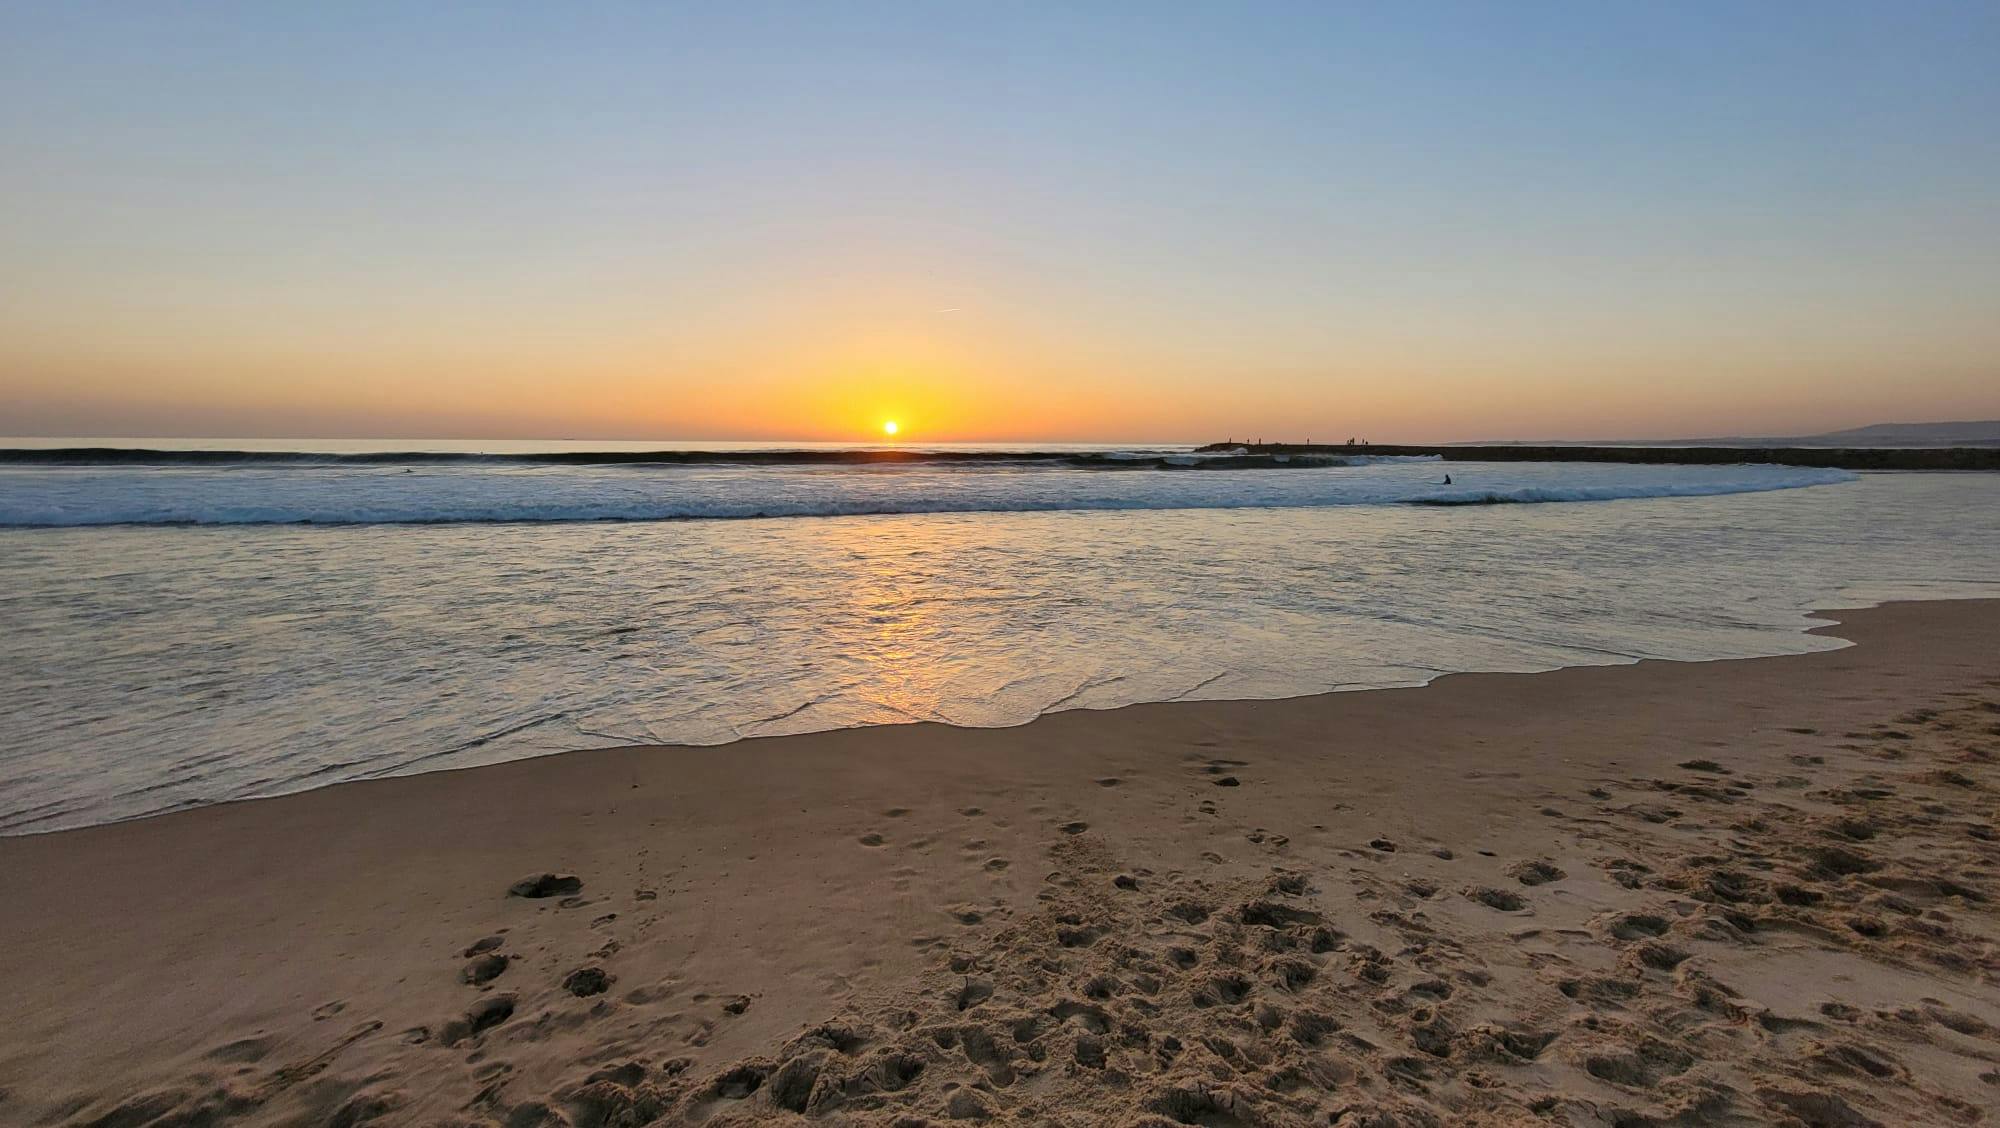 Caparica o zachodzie słońca: piaszczysta plaża, morze i zachodzące słońce